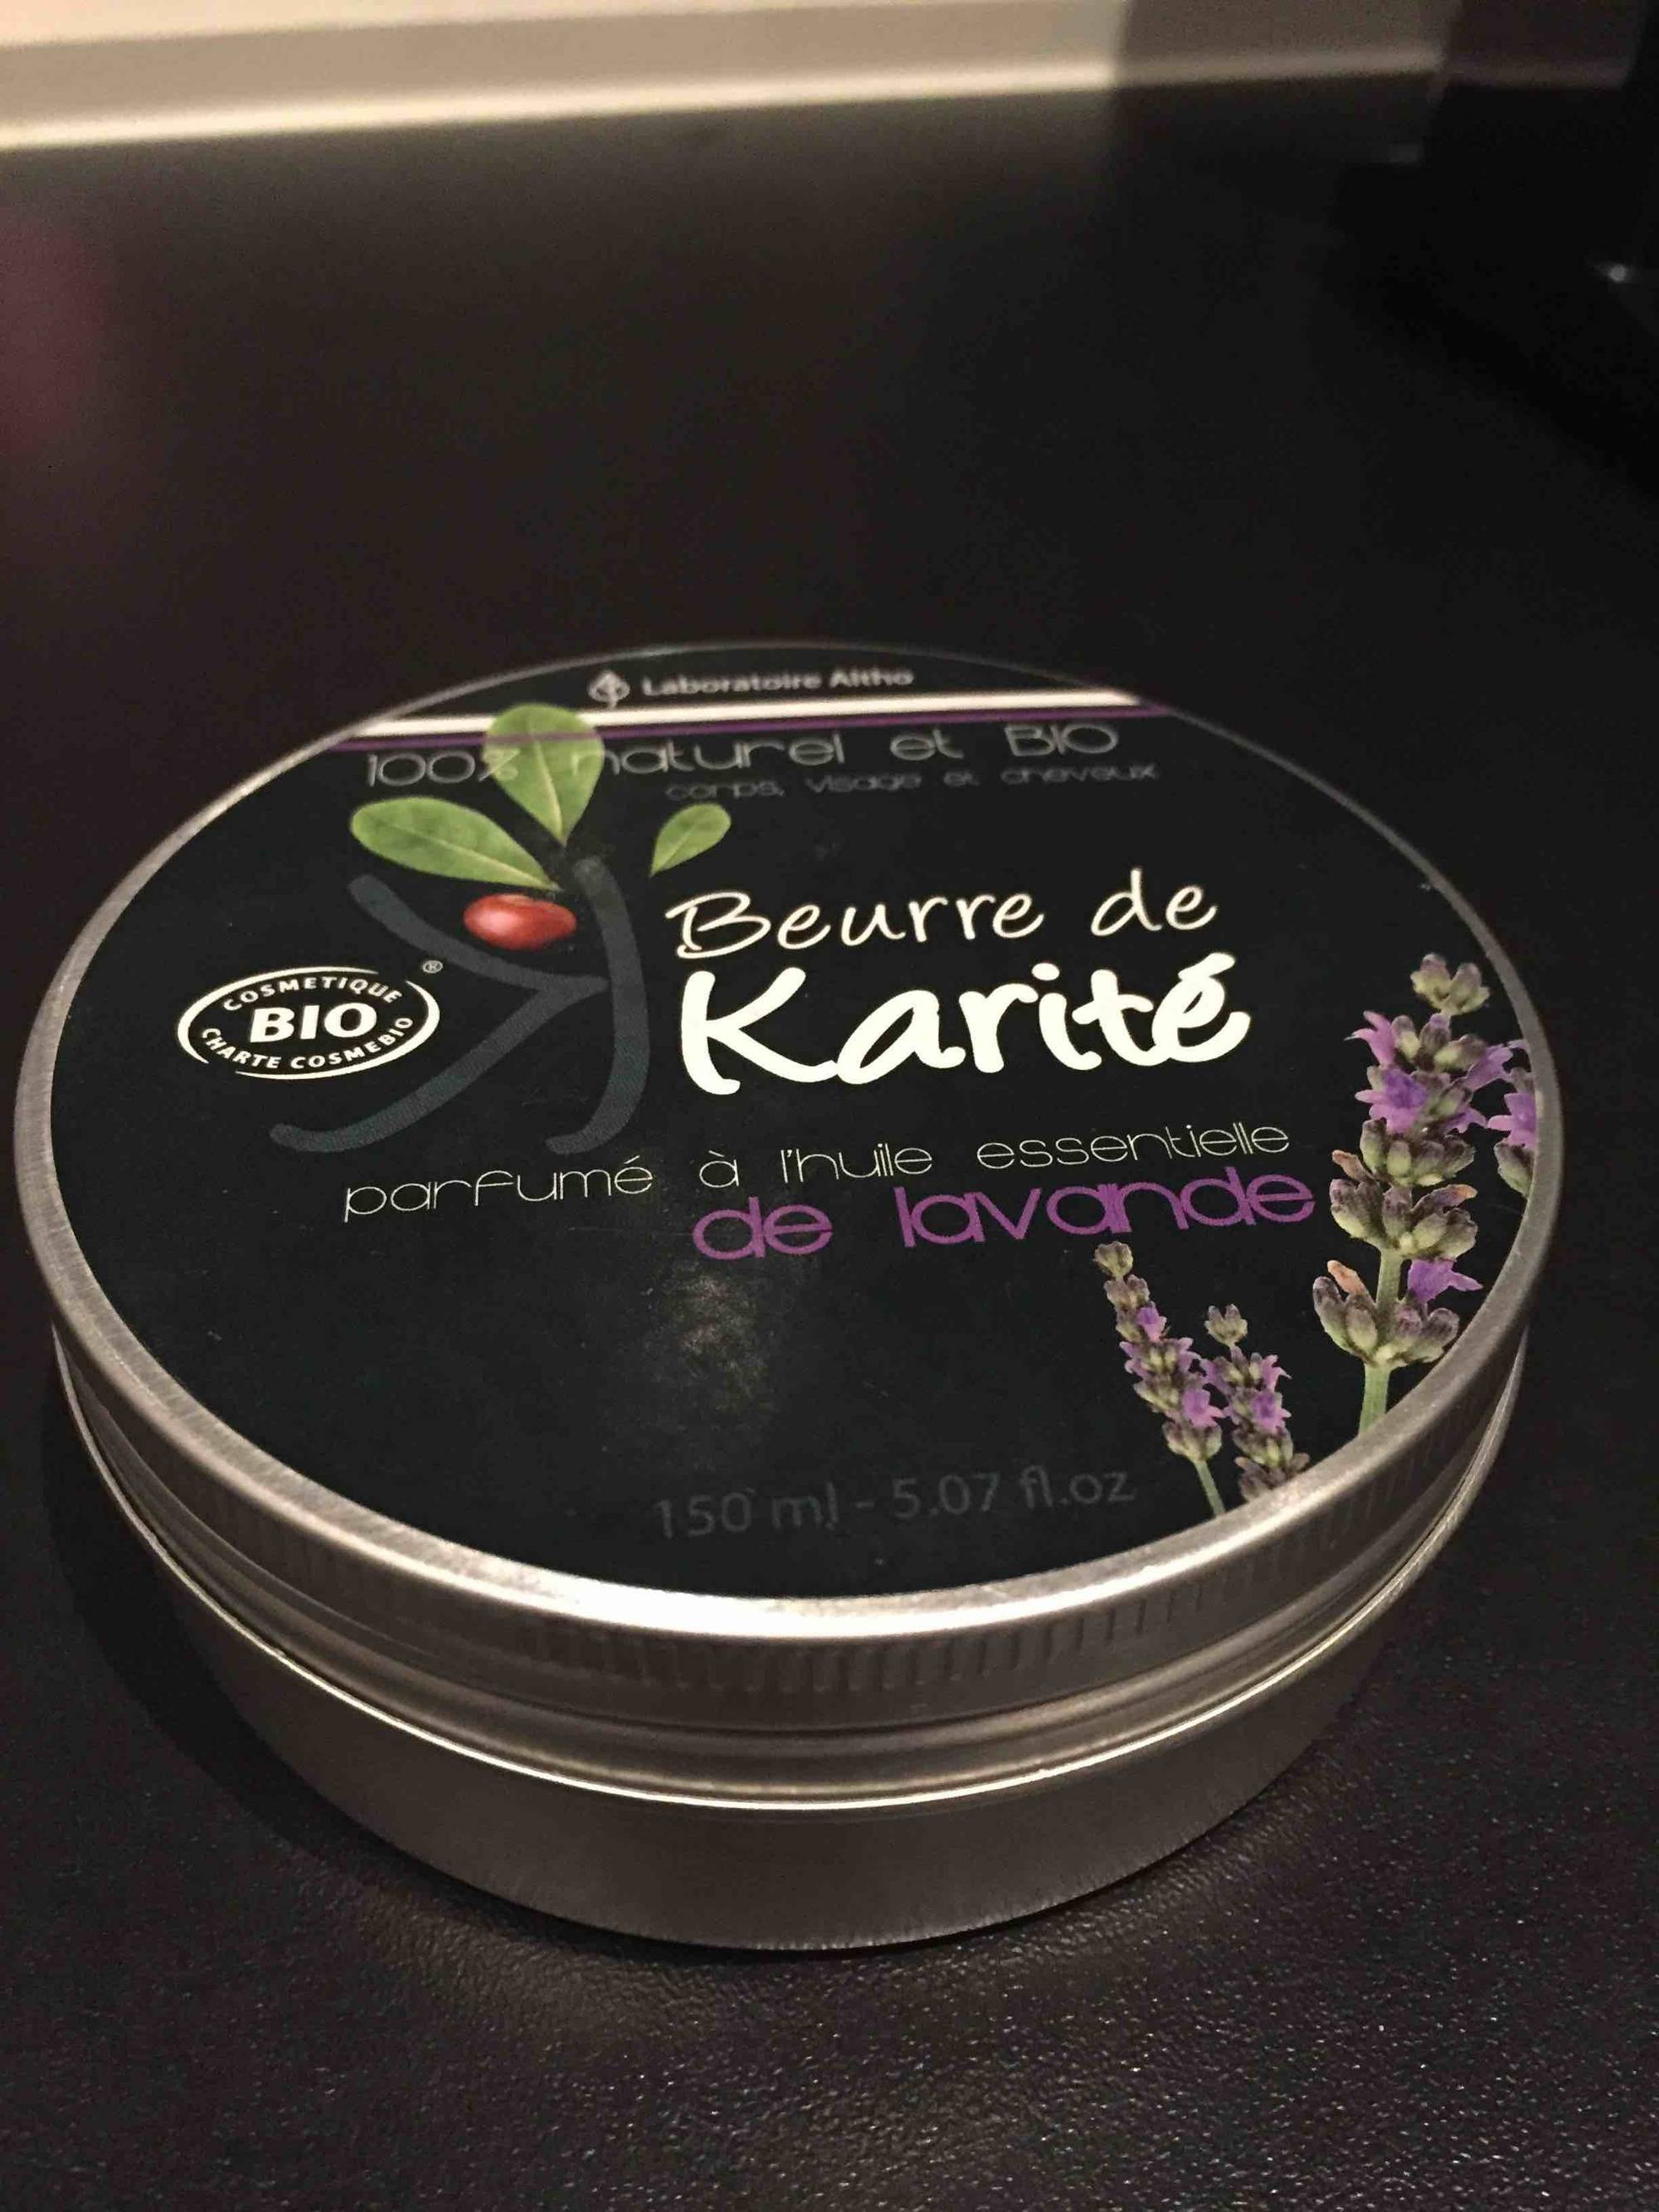 LABORATOIRE ALTHO - Beurre de Karité parfumé à l'huile essentielle de lavande